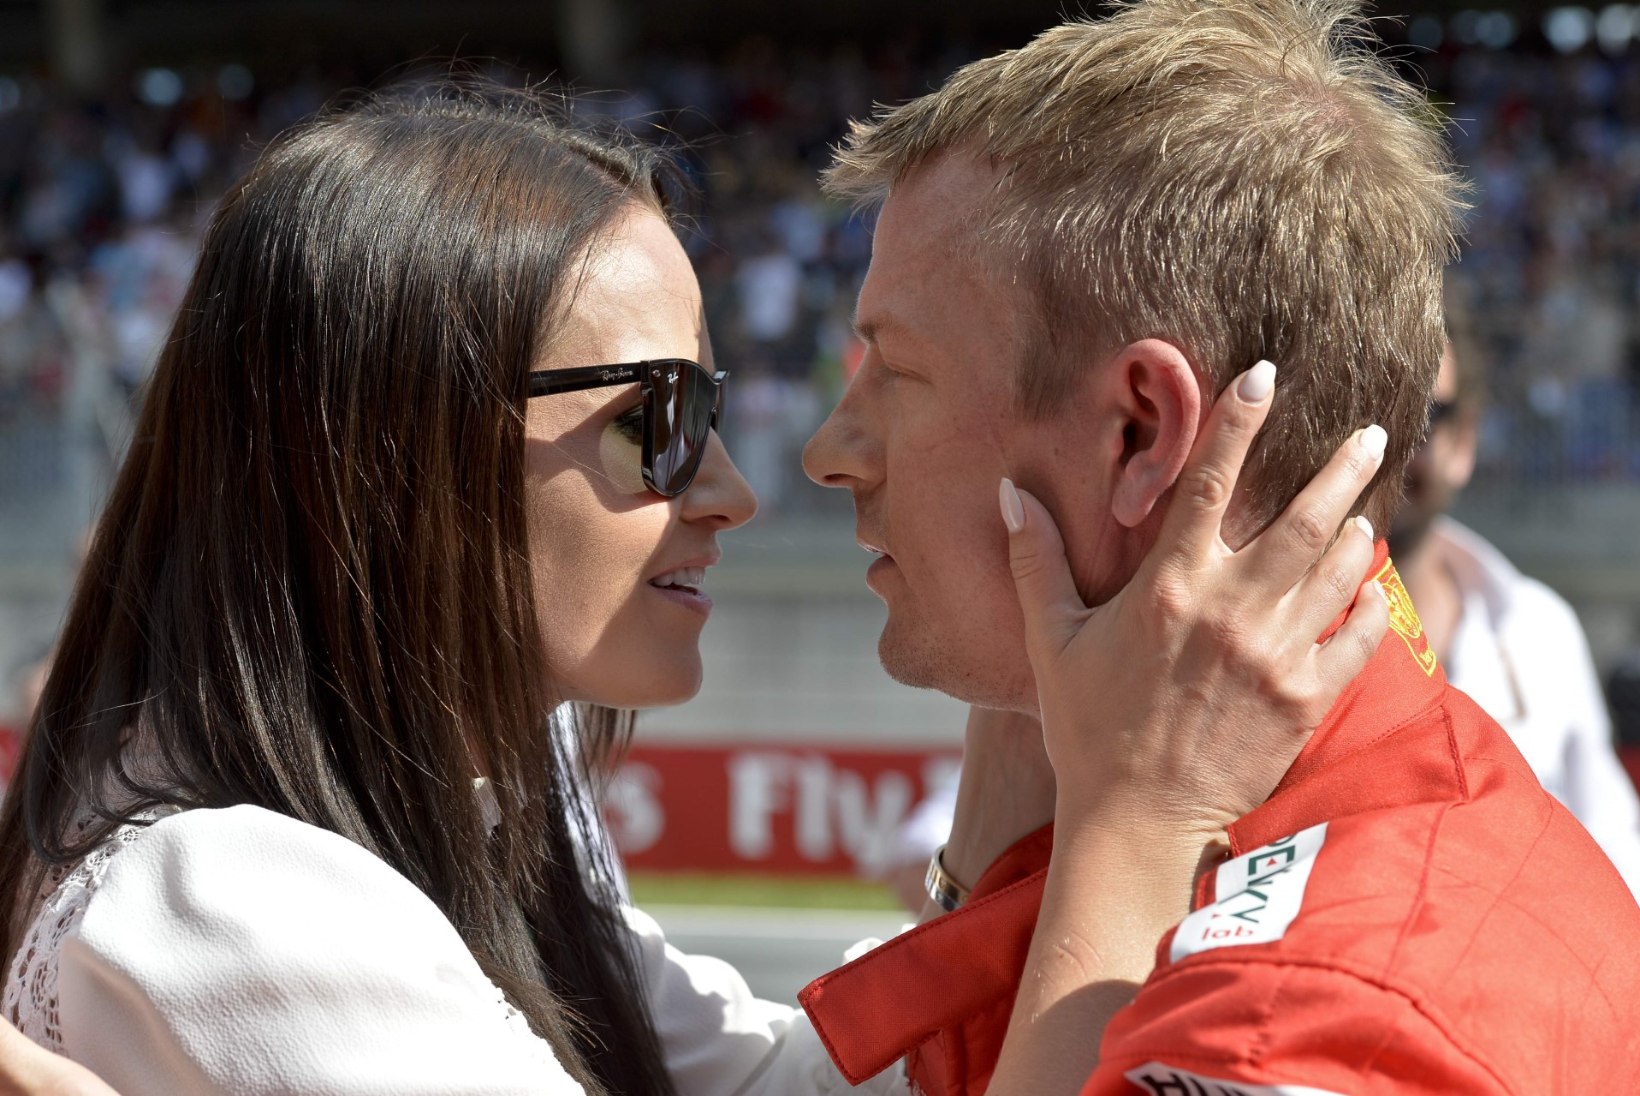 VIDEO | Räikköneni kauni abikaasa käes peitub ülivõimas pommlöök, mis pani Kimi piinlikusse olukorda